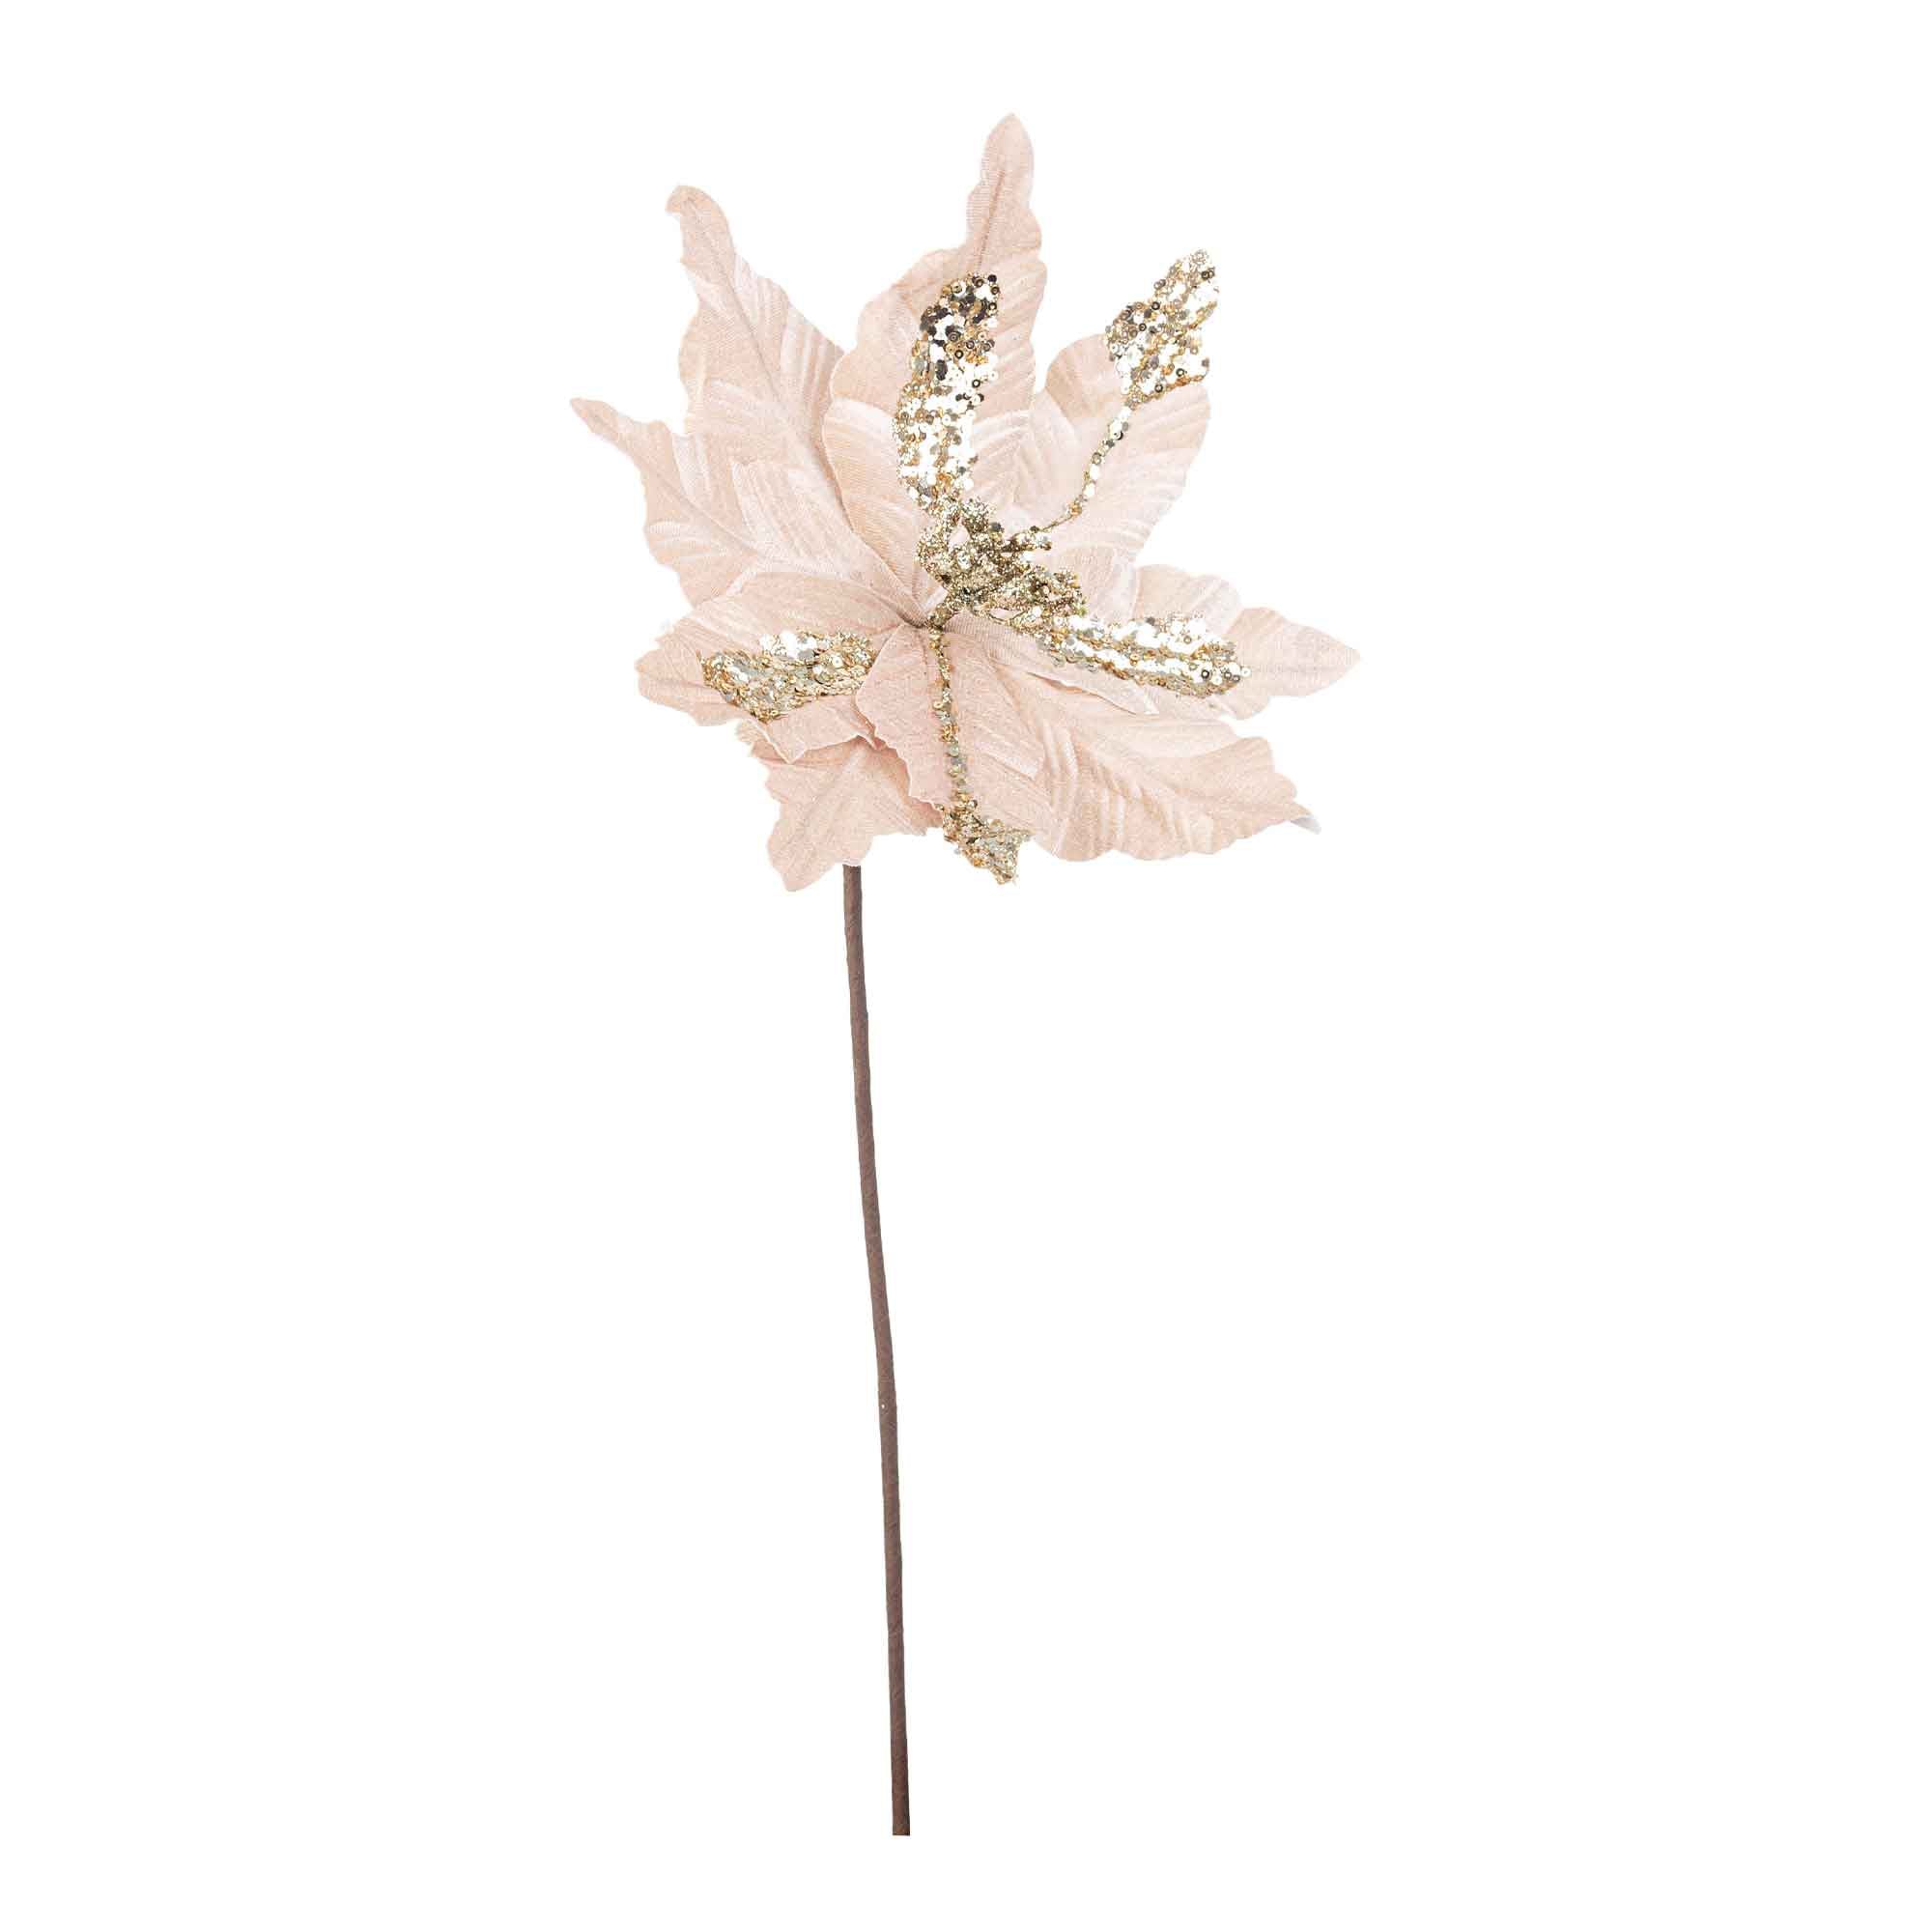 BIZZOTTO Decorazione Natalizia Fiore Poinsettia Cassandra Natale Champagne 50cm